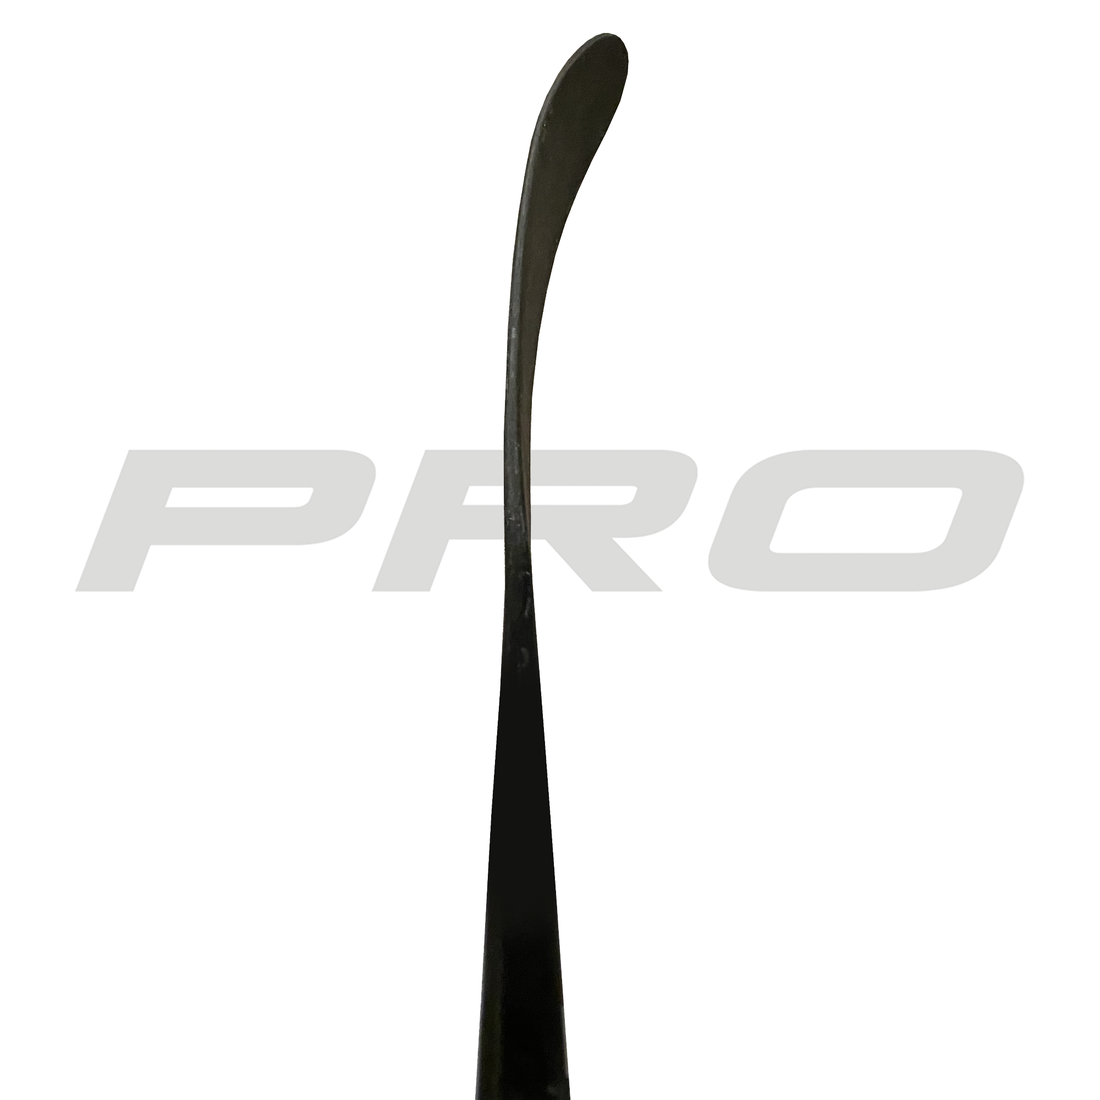 PRO7117 (ST: Kovalchuk Pro, New) - Red Line (375 G) - Pro Stock Hockey Stick - Left